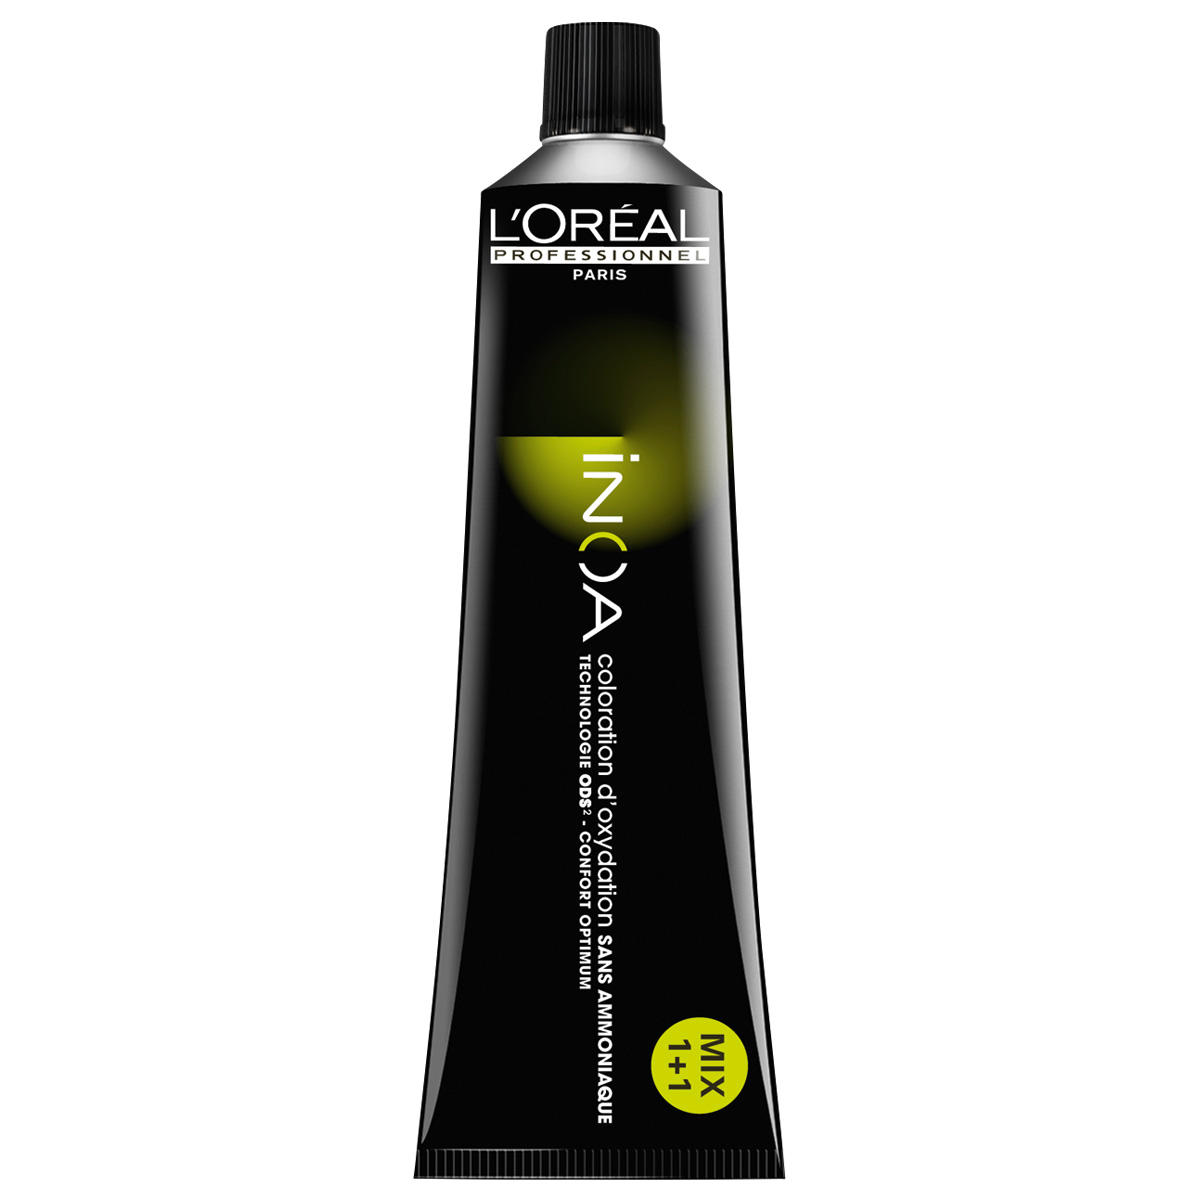 L'Oréal Professionnel Paris Coloration 6,34 Rubio oscuro dorado cobrizo, tubo 60 ml